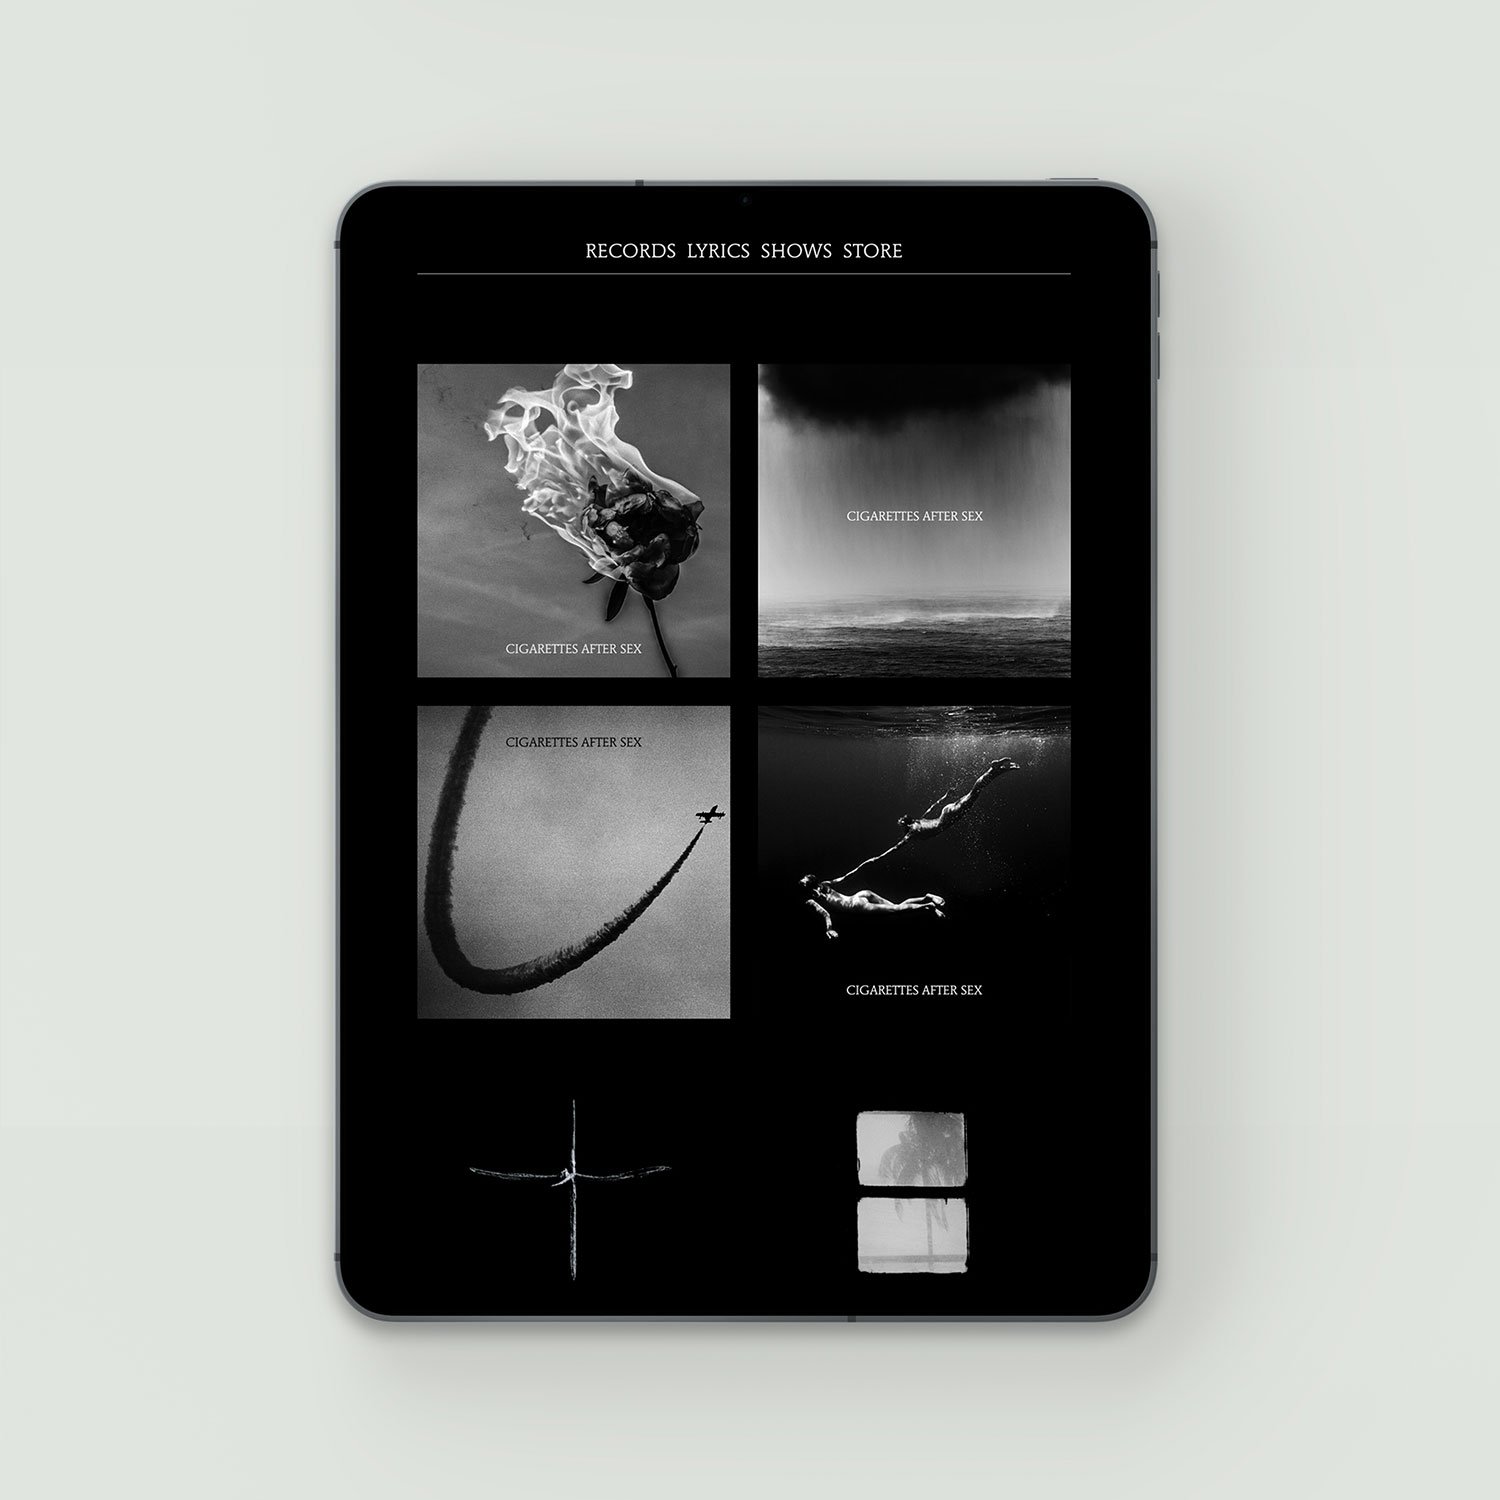 Cigarettes-after-sex-website-design-squarespace2.jpg